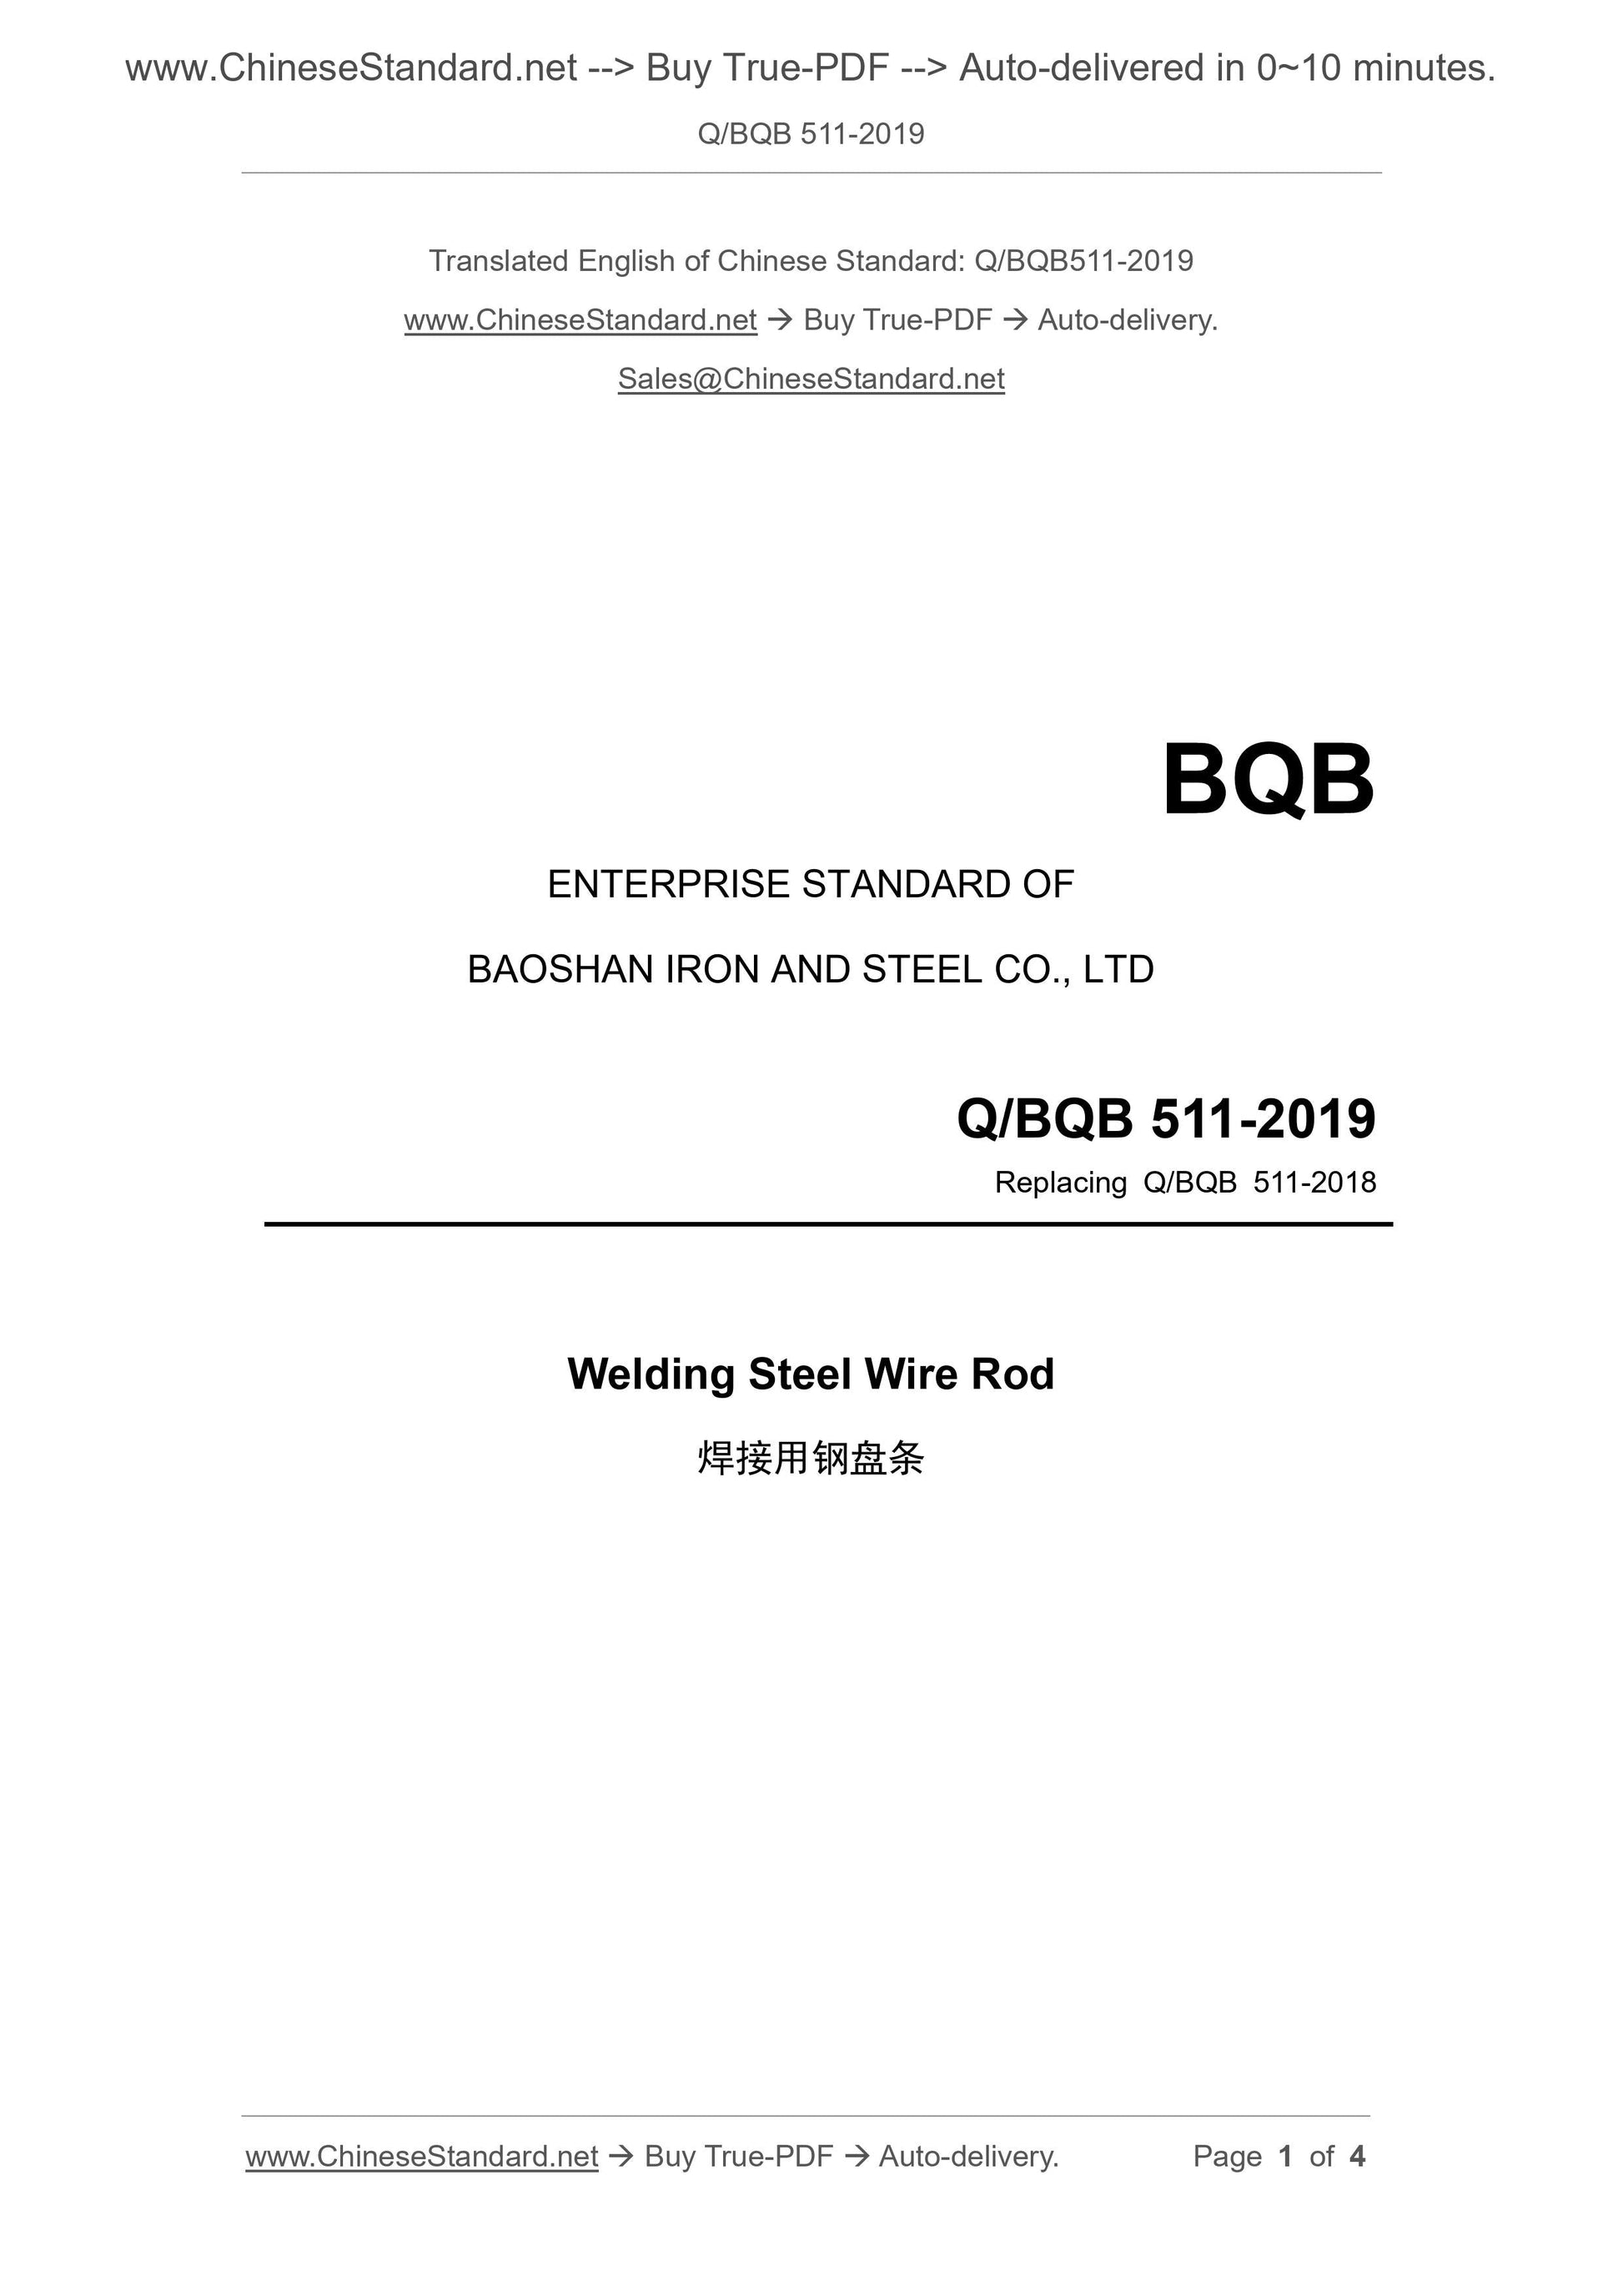 Q/BQB 511-2019 Page 1